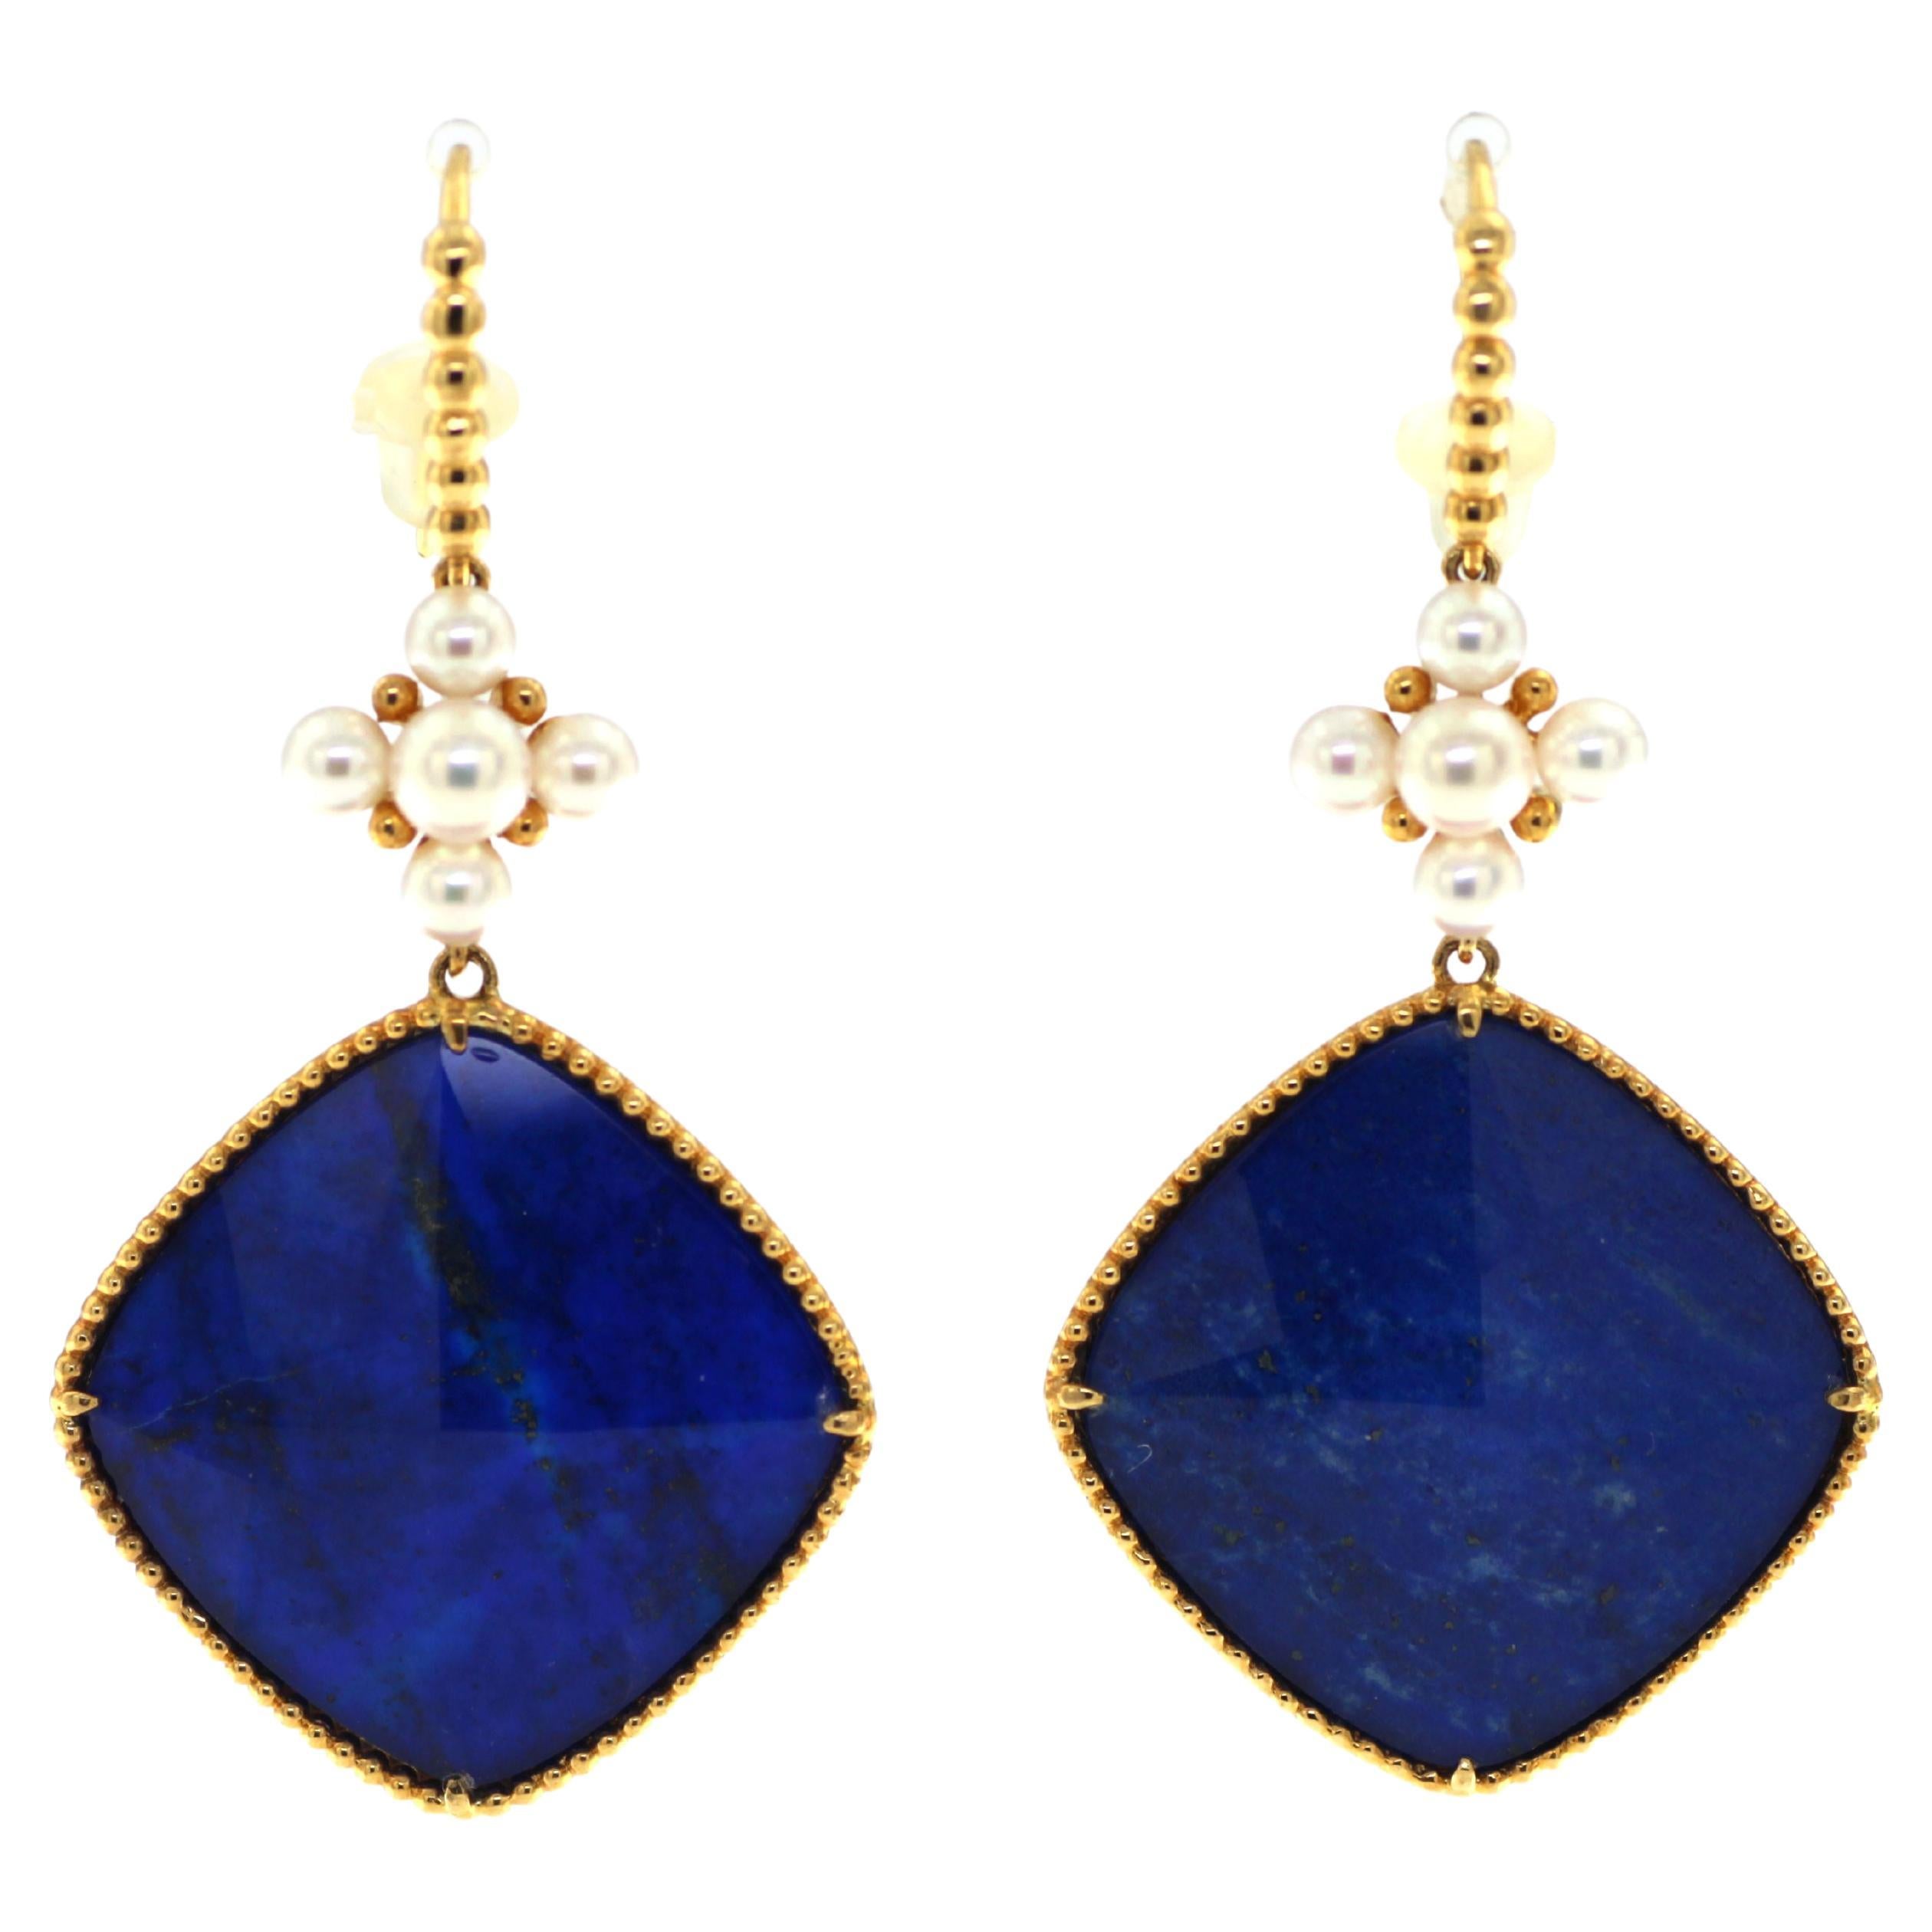 Doublet Lapis Lazuli Rock Crystal Pearl Dangle Earrings in 18 Karat Yellow Gold